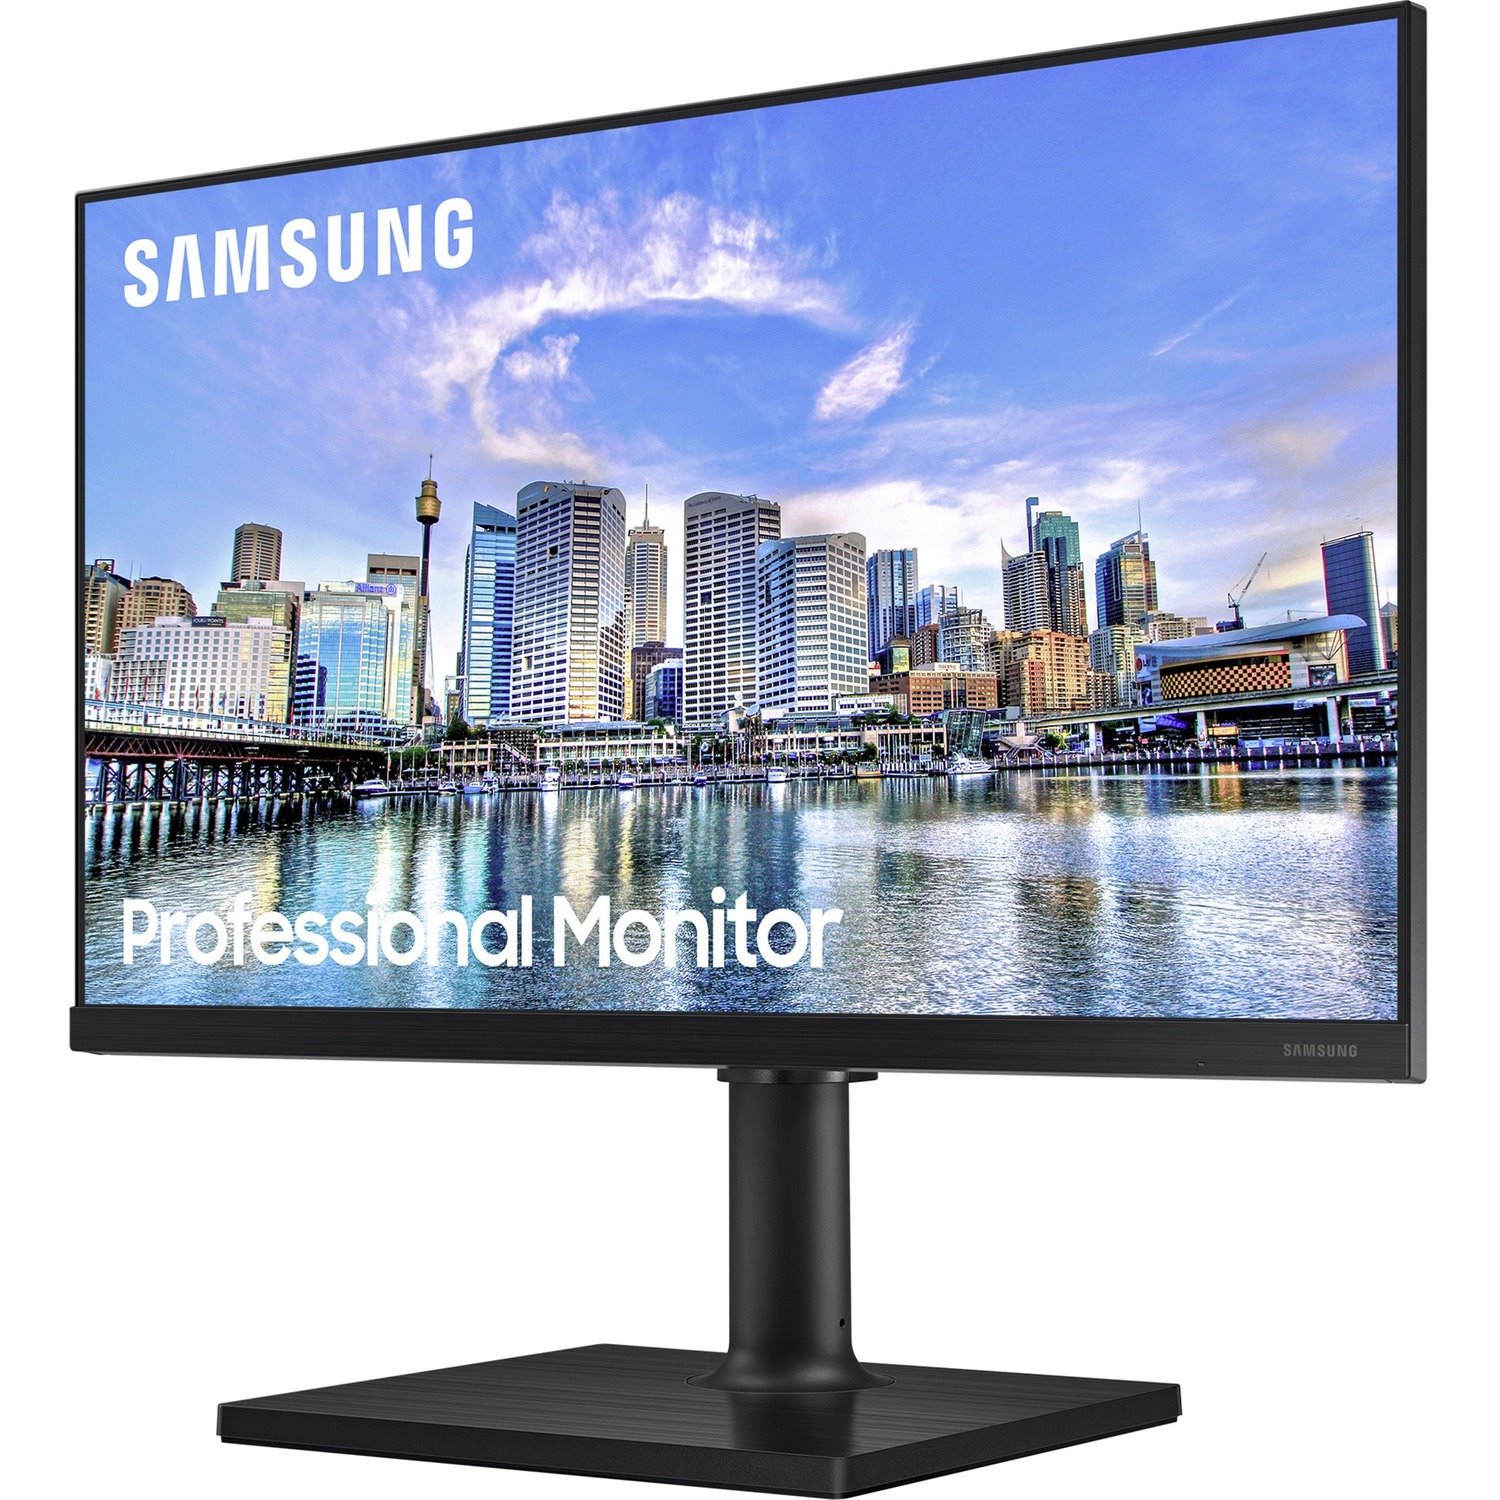 Samsung Professional F27T450FQU 27" Class Full HD LCD Monitor - 16:9 - Black